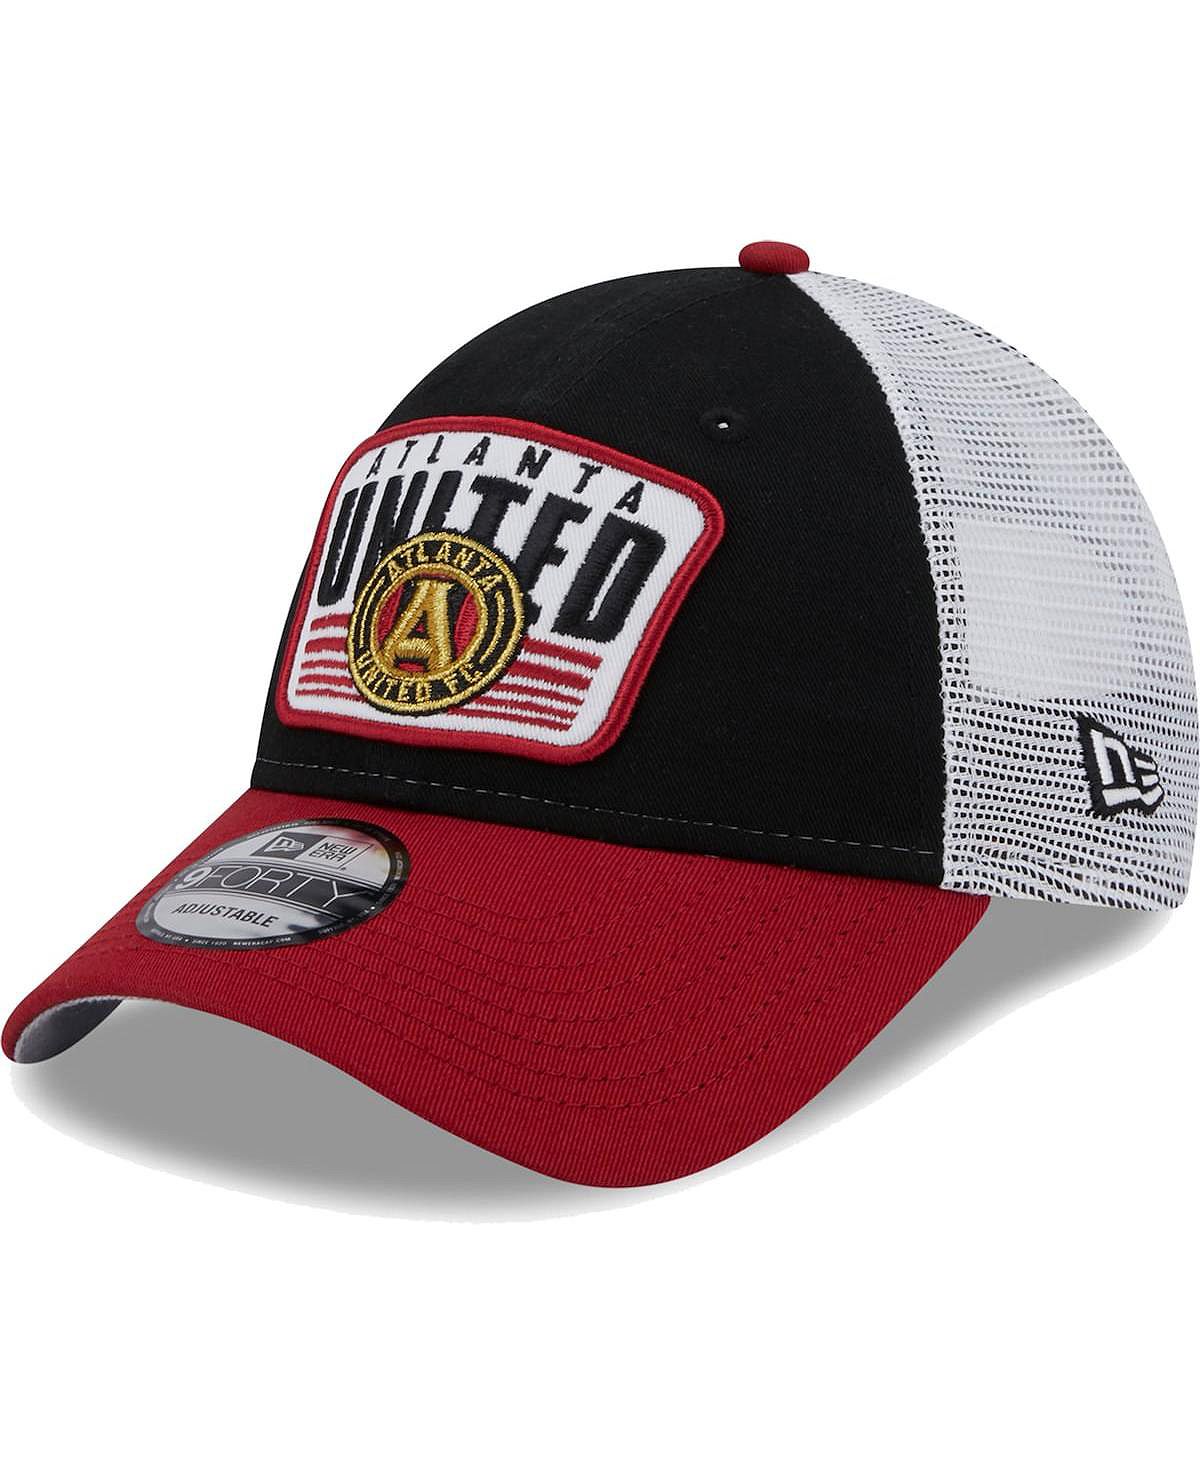 Мужская черно-красная кепка Atlanta United FC Patch 9FORTY Trucker Snapback New Era